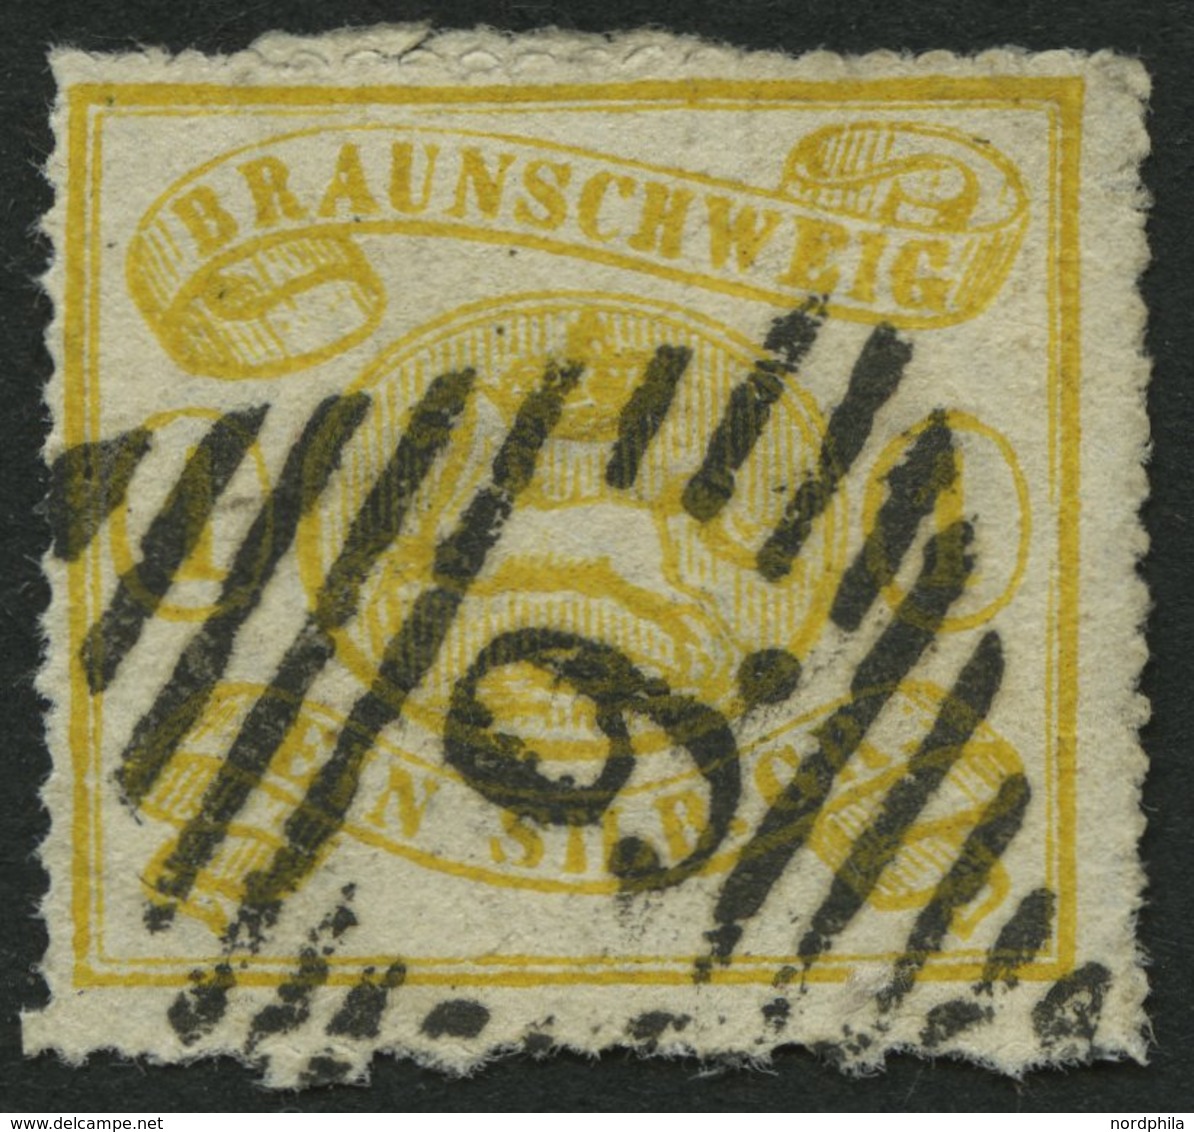 BRAUNSCHWEIG 14A O, 1864, 1 Sgr. Gelbocker, Durchstochen 16, Pracht, Mi. 180.- - Brunswick